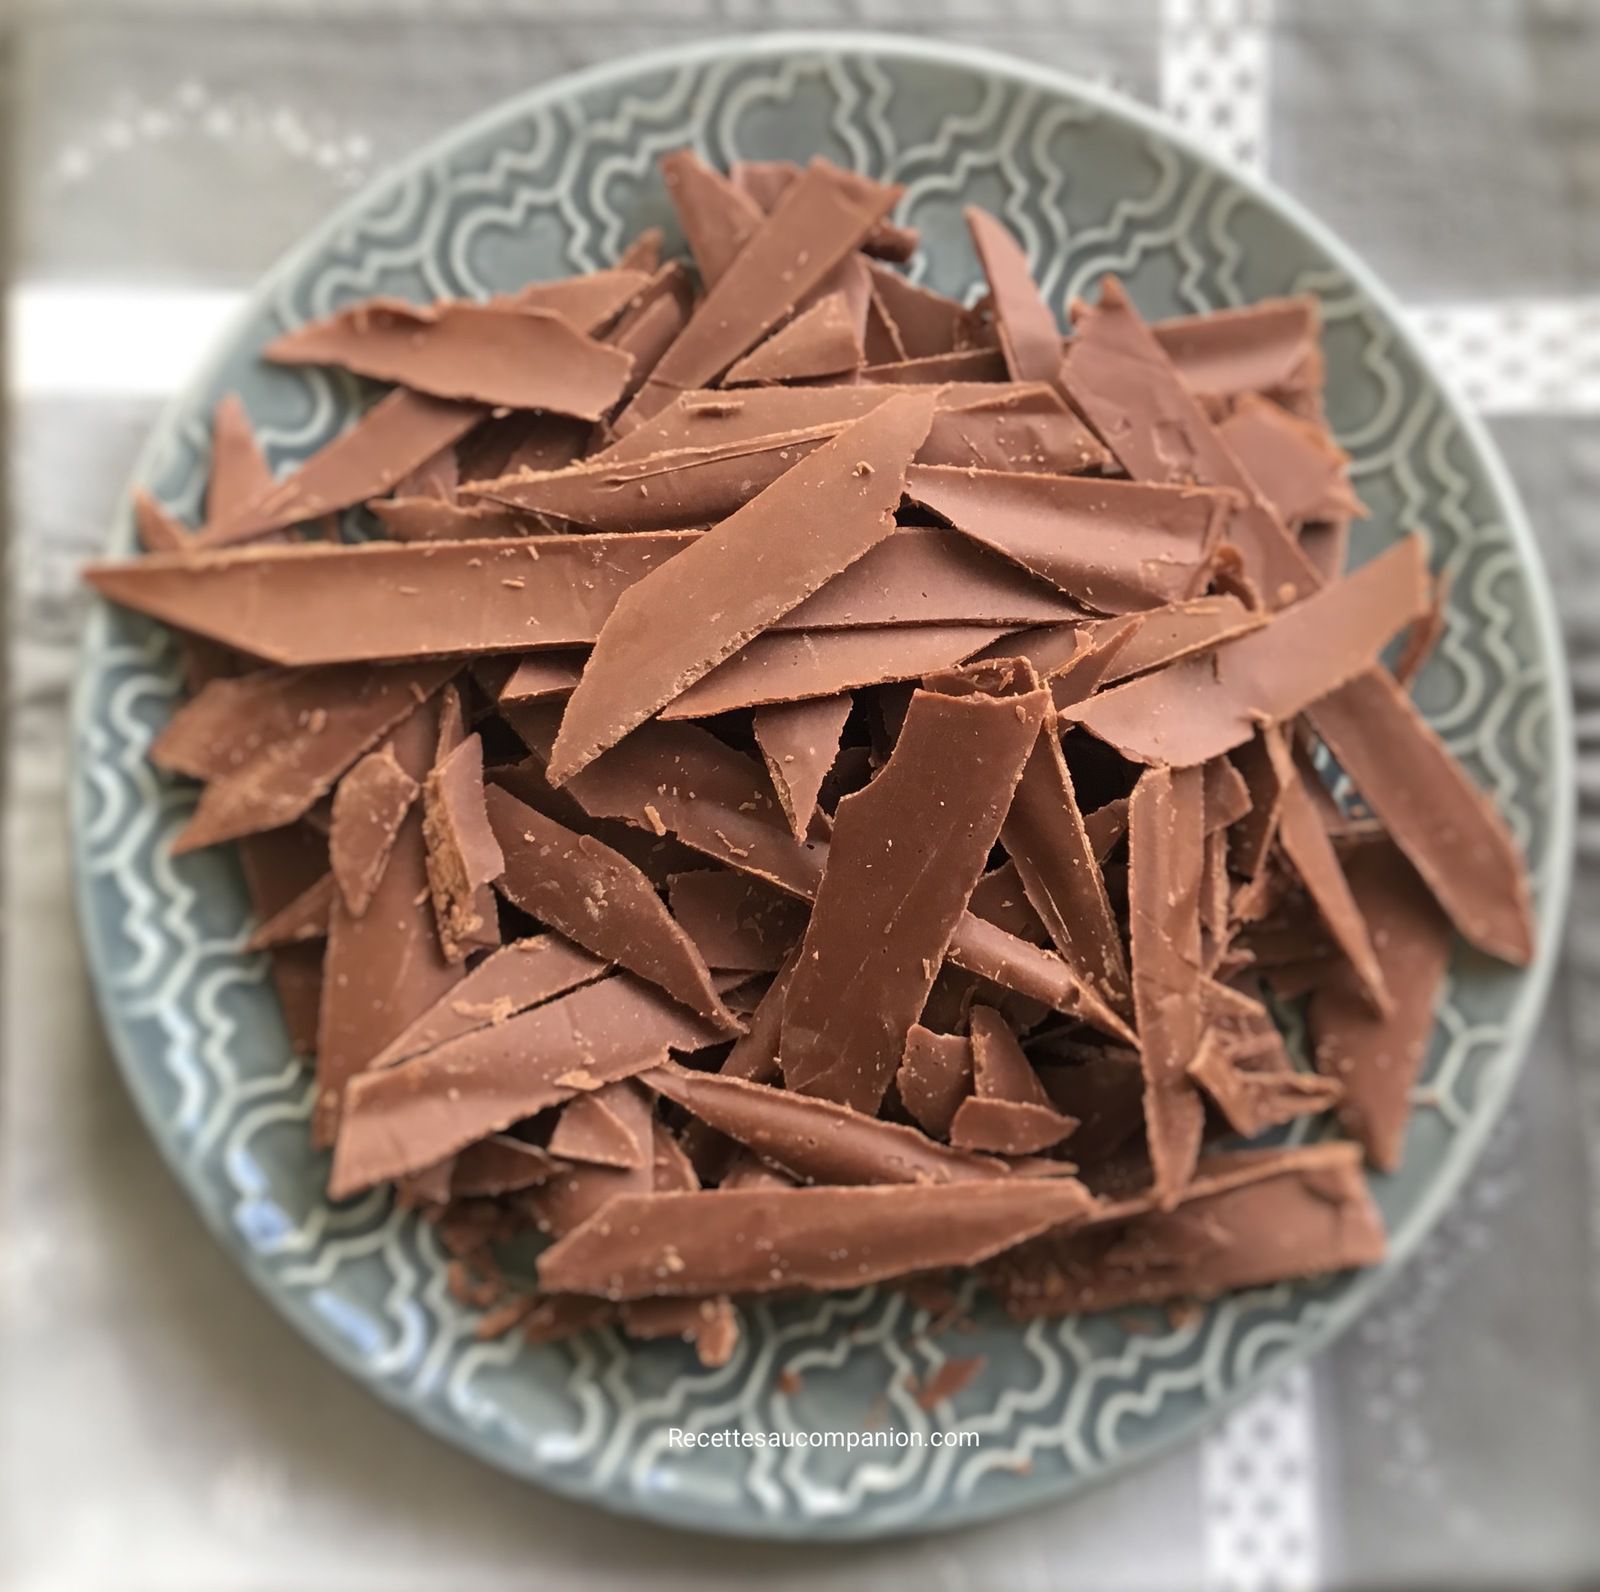 Comment réussir ses copeaux de chocolat - Les recettes de sandrine au  companion ou pas